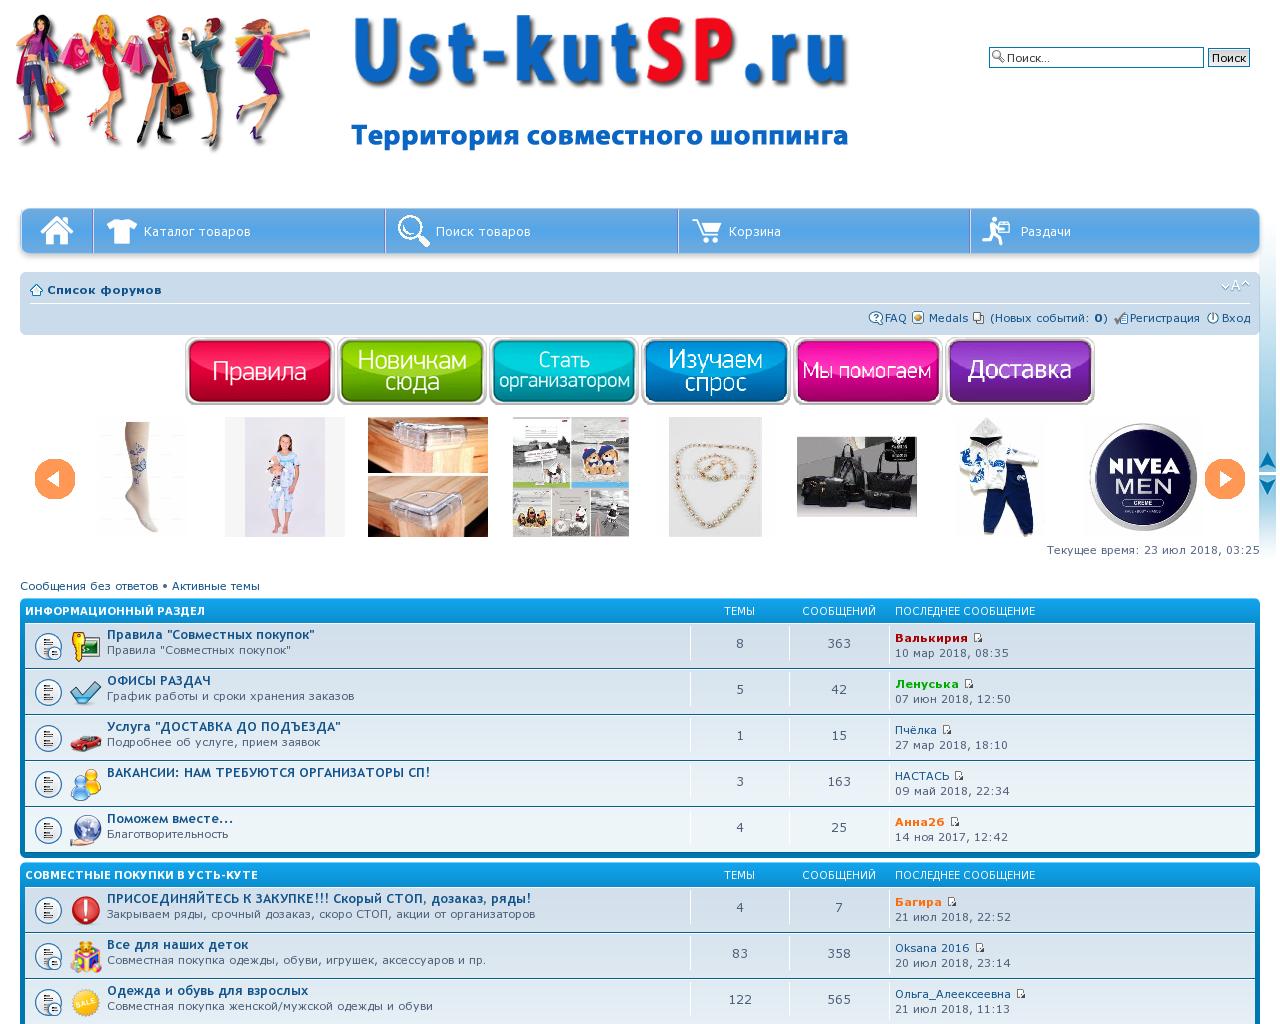 Изображение сайта ust-kutsp.ru в разрешении 1280x1024